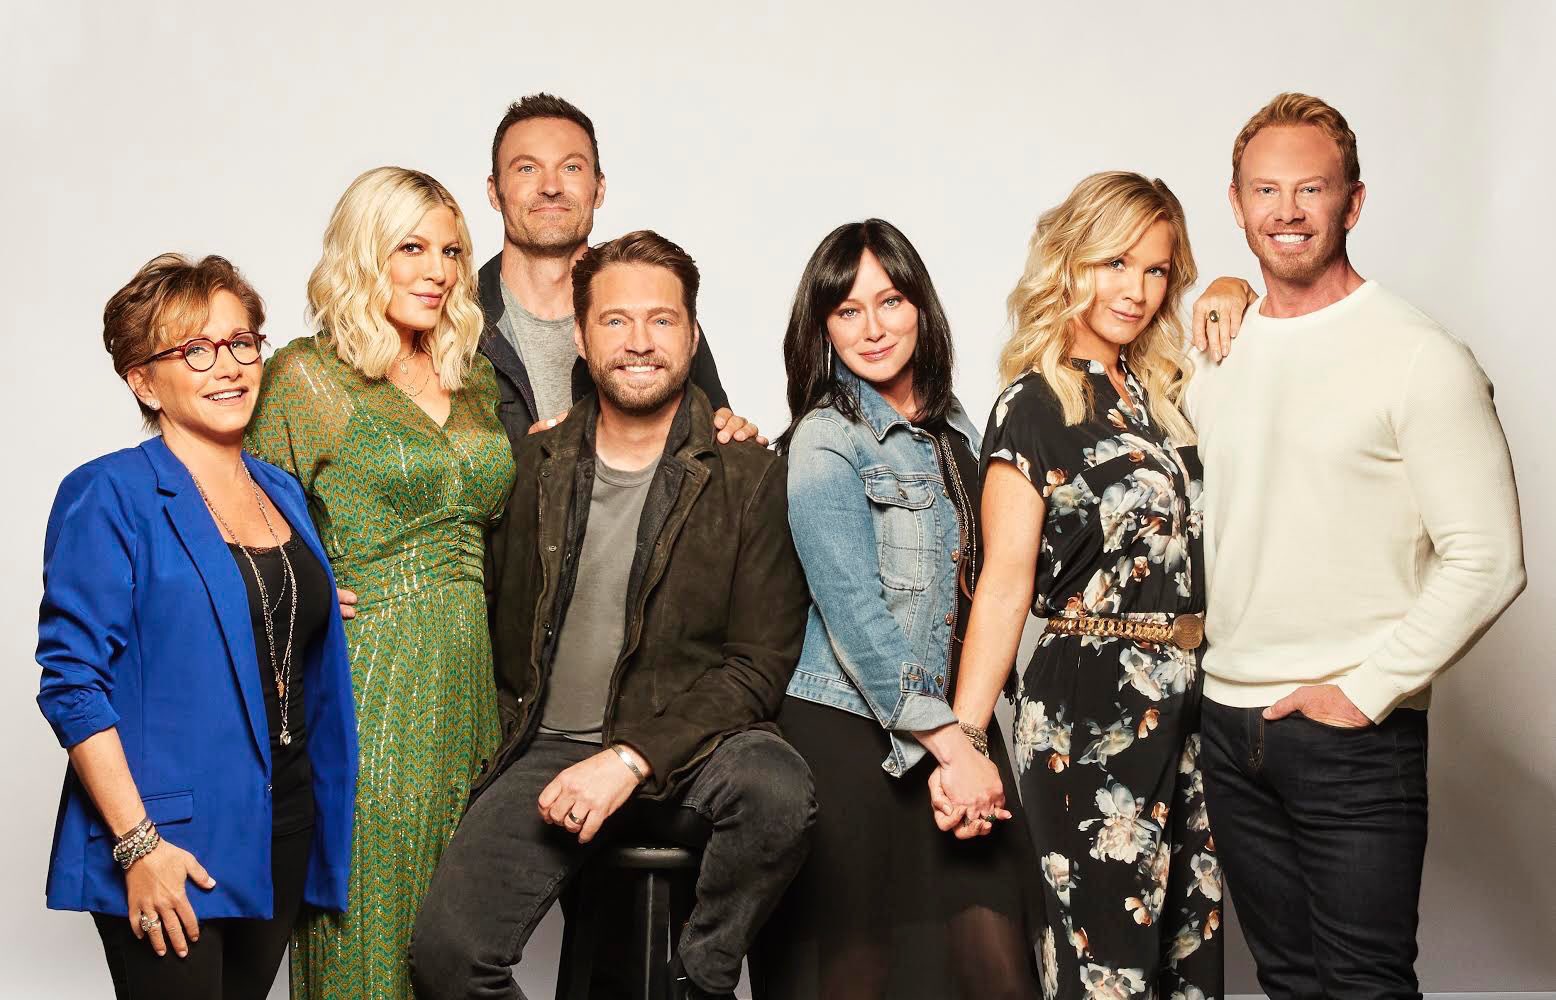 Mira el primer tráiler promocional del regreso de ‘Beverly Hills 90210’